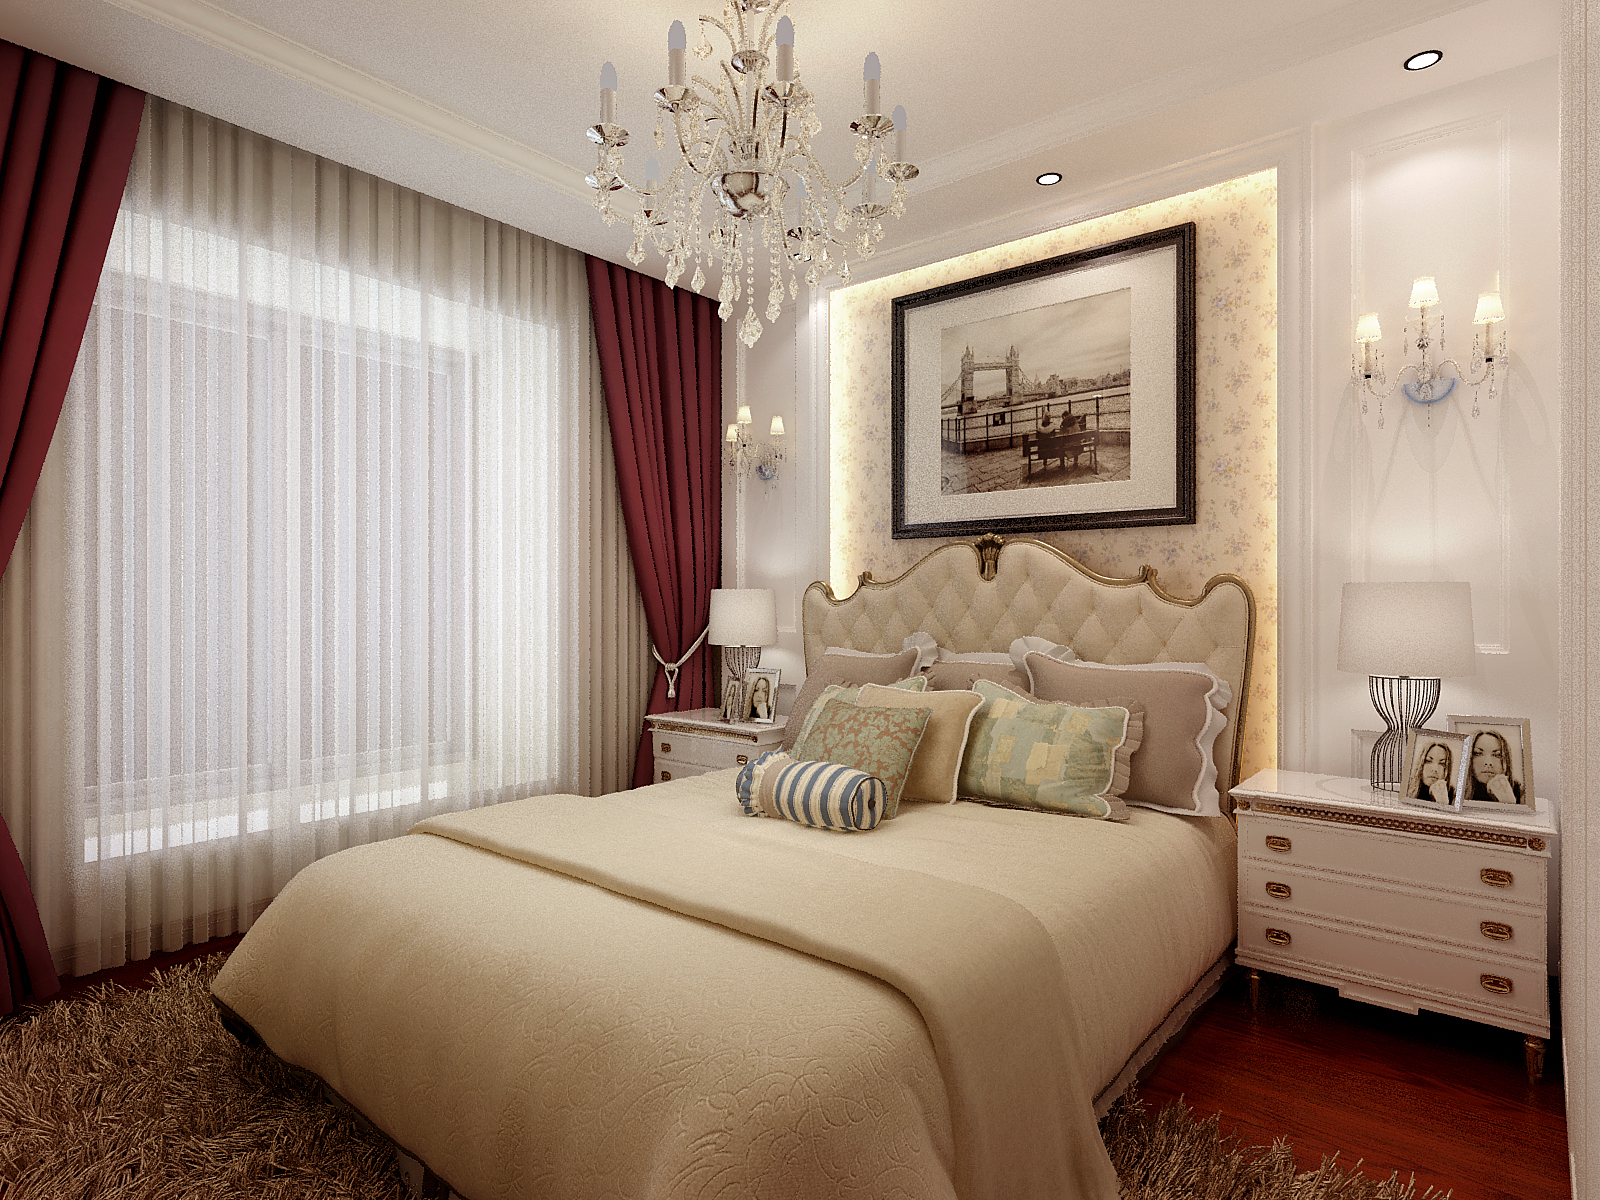 主卧室床头背景墙采用凹凸造型，加入灯槽造型，白色墙面跟壁纸形成层次感，再加上两个对称壁灯，特别符合简欧的优美。.jpg